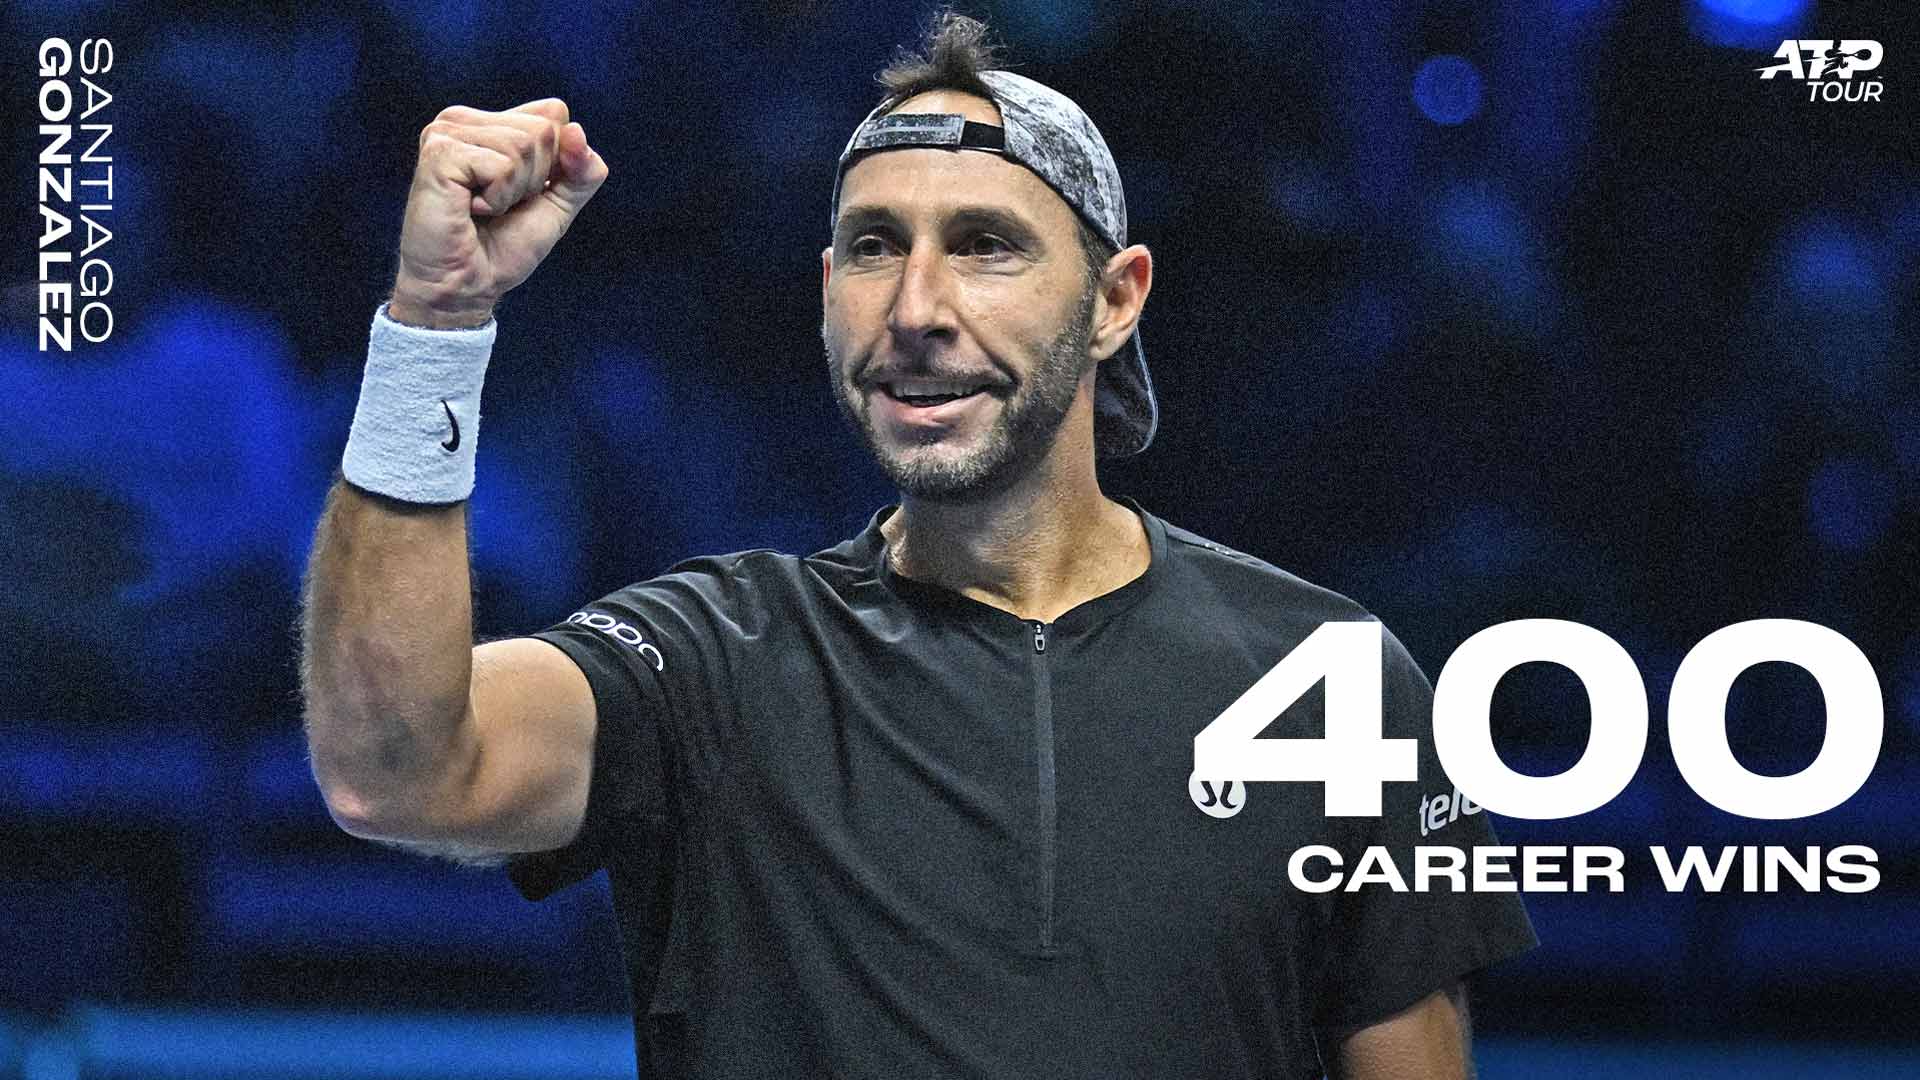 Santiago Gonzalez is a 23-zime ATP Tour doubles champion.